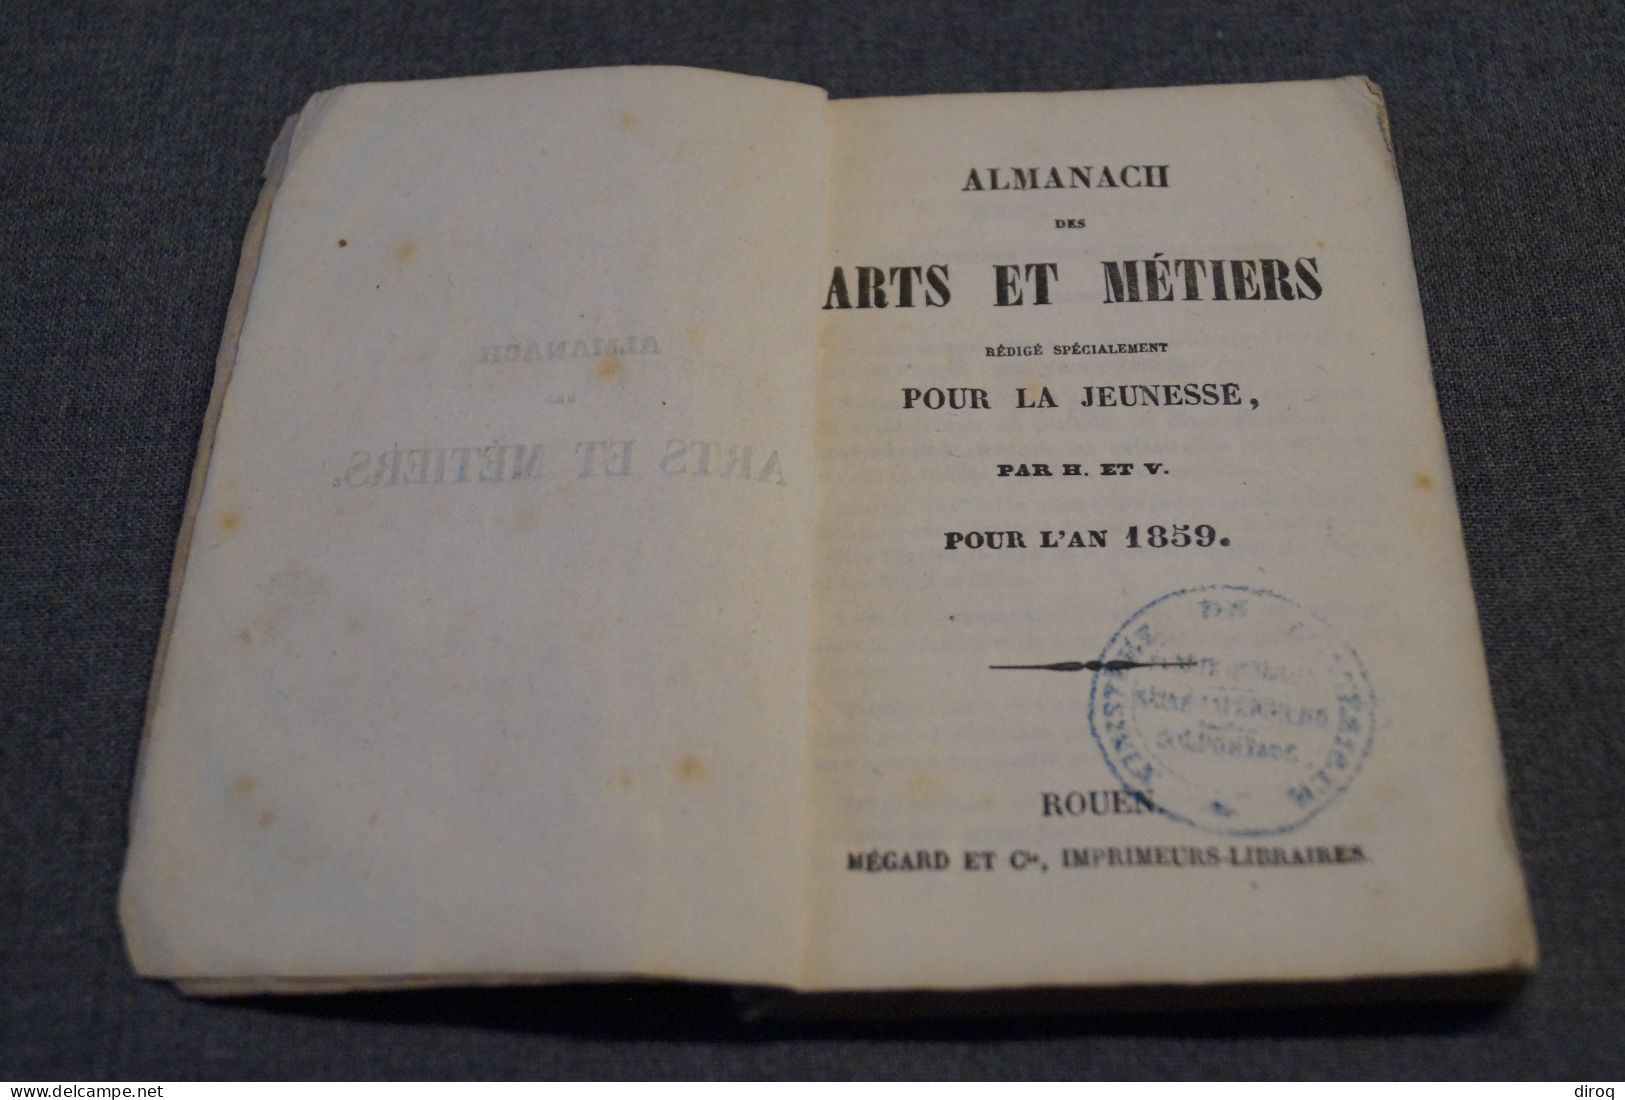 Almanach 1859,Art et Métiers,1 er. année,144 pages,14 Cm. sur 9 Cm.